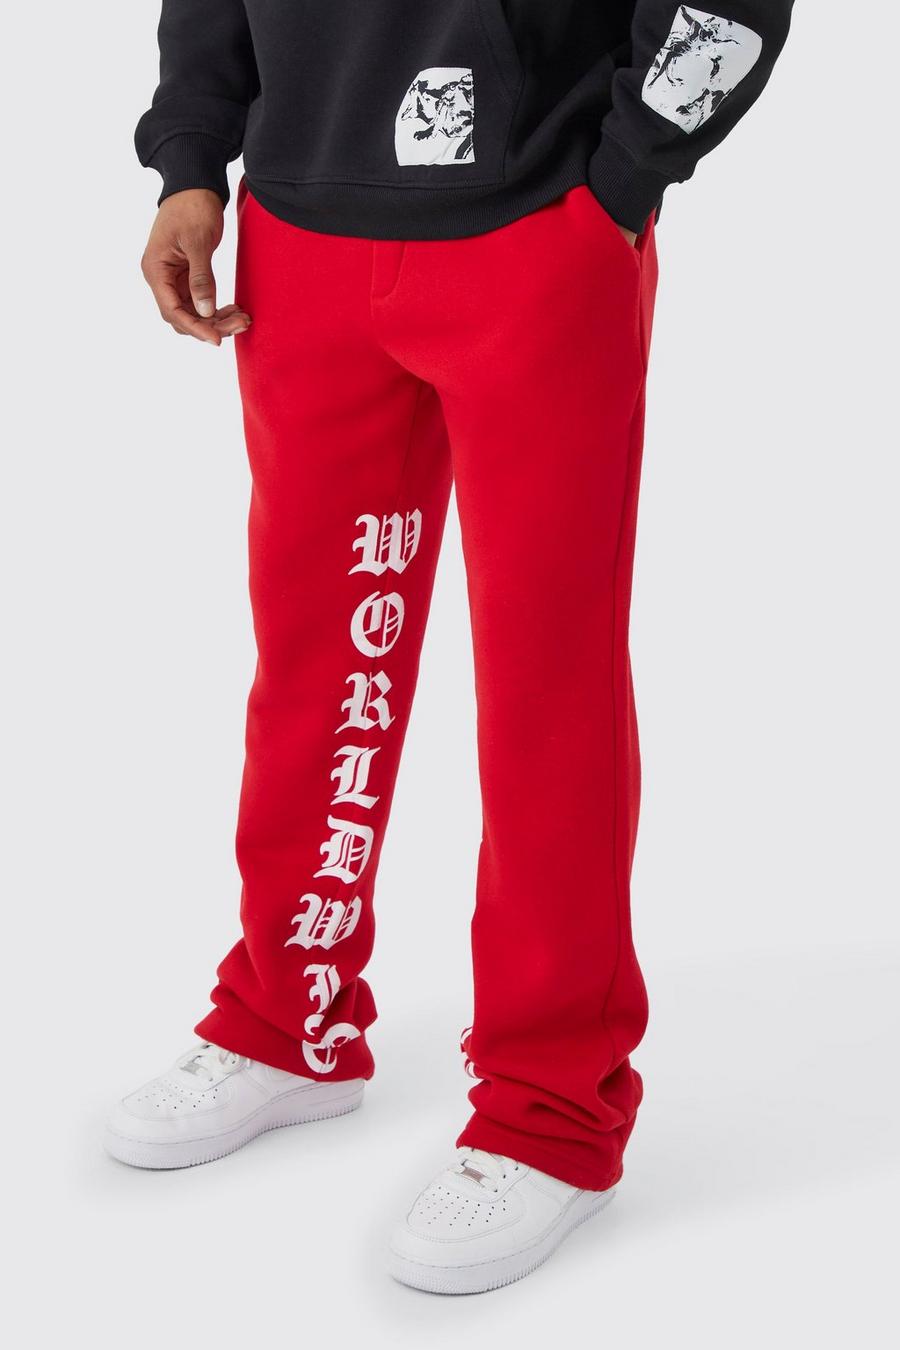 Pantaloni tuta Slim Fit a zampa con stampa e pieghe sul fondo, Red rosso